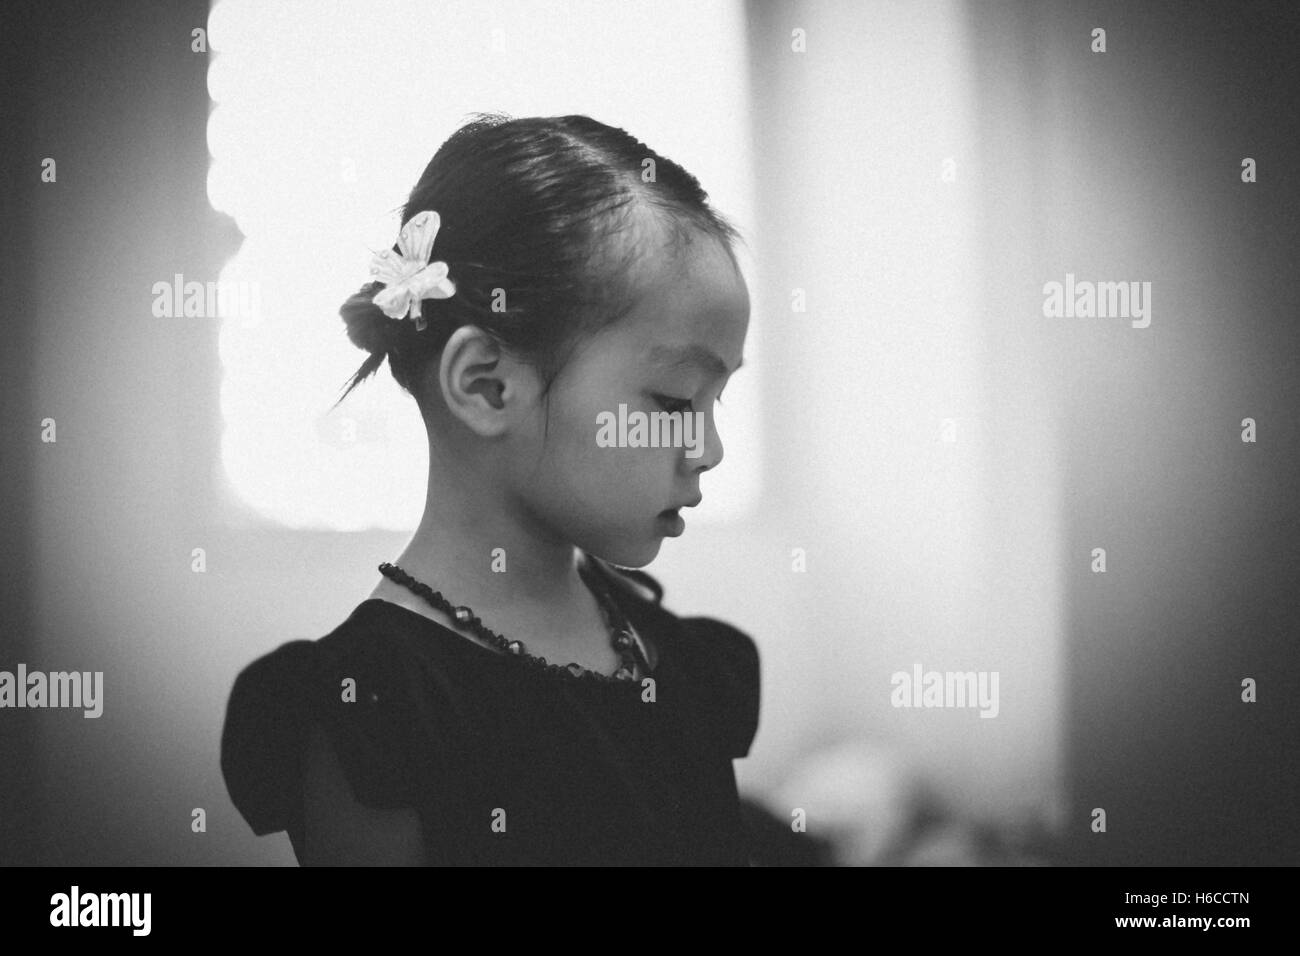 Portrait de jeune fille vietnamienne avec robe noire Banque D'Images